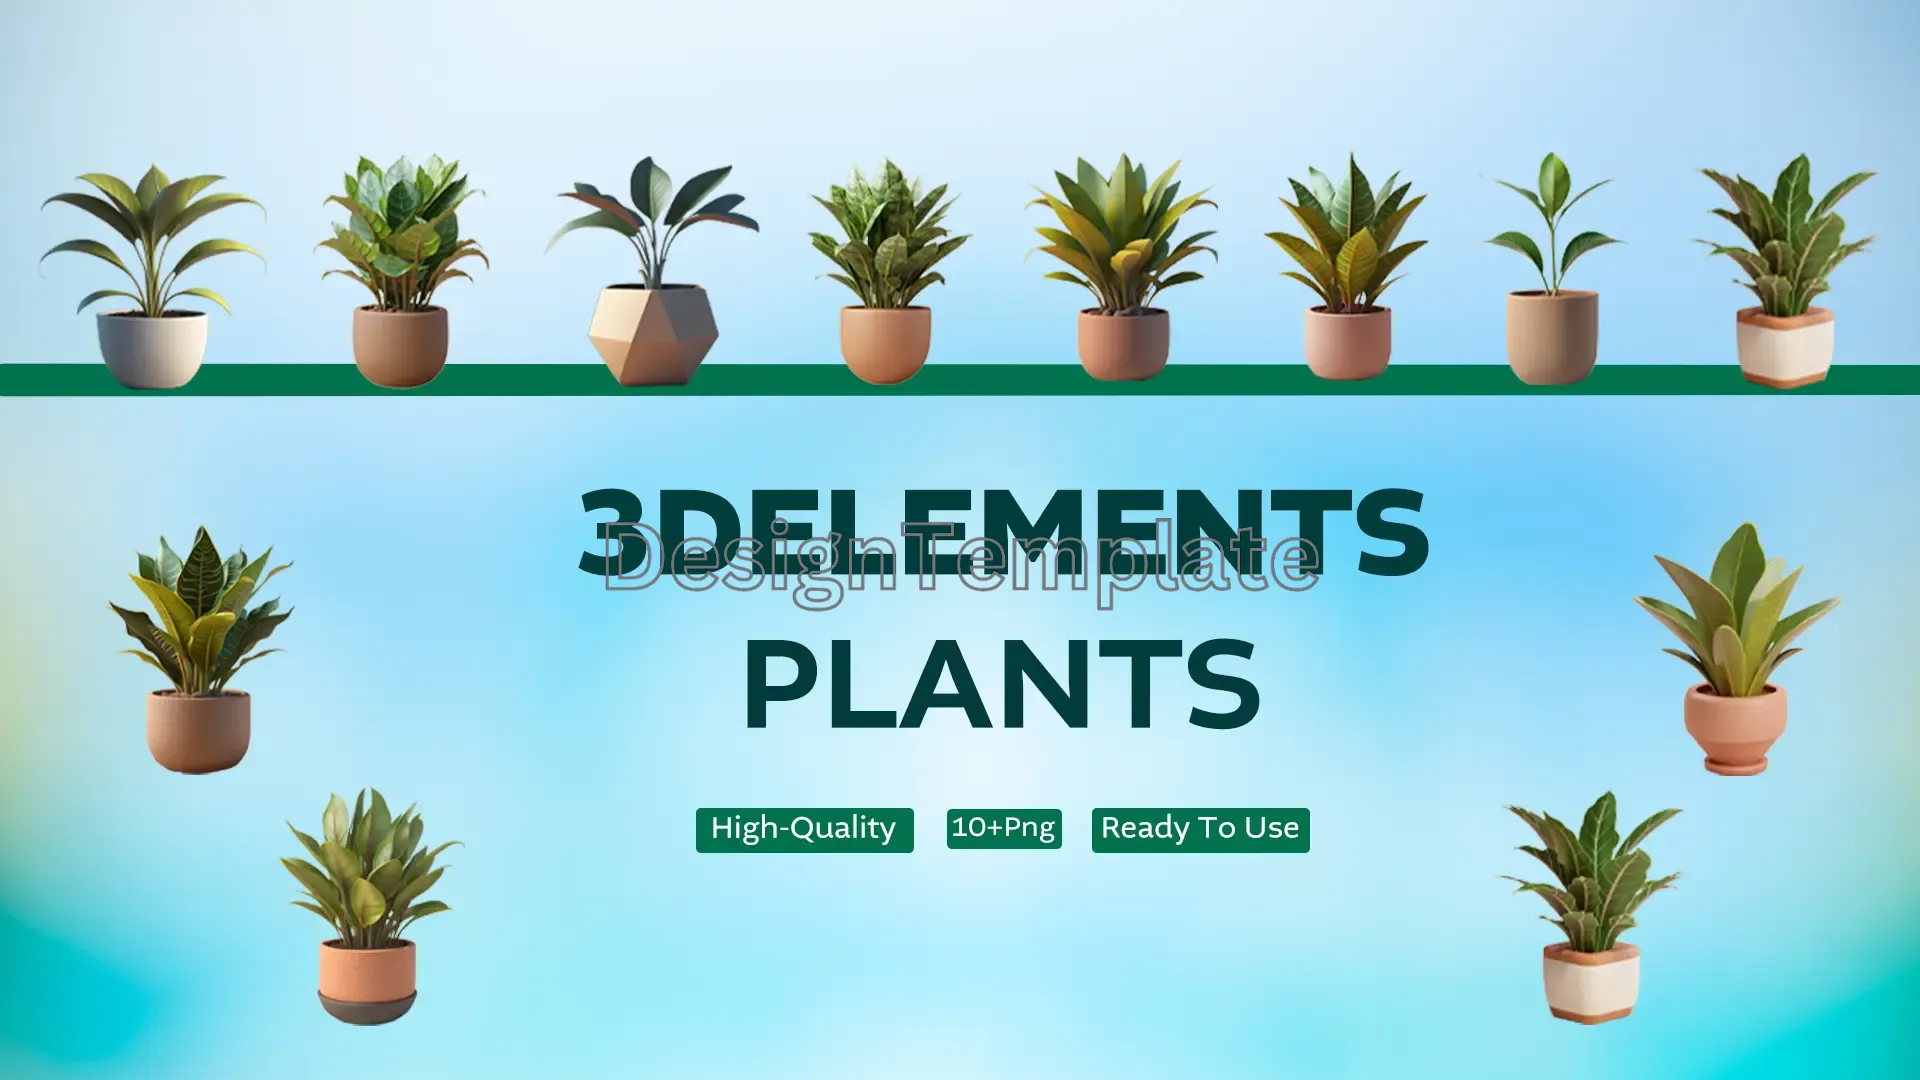 Botanical Beauties Plants 3D Elements Collection image